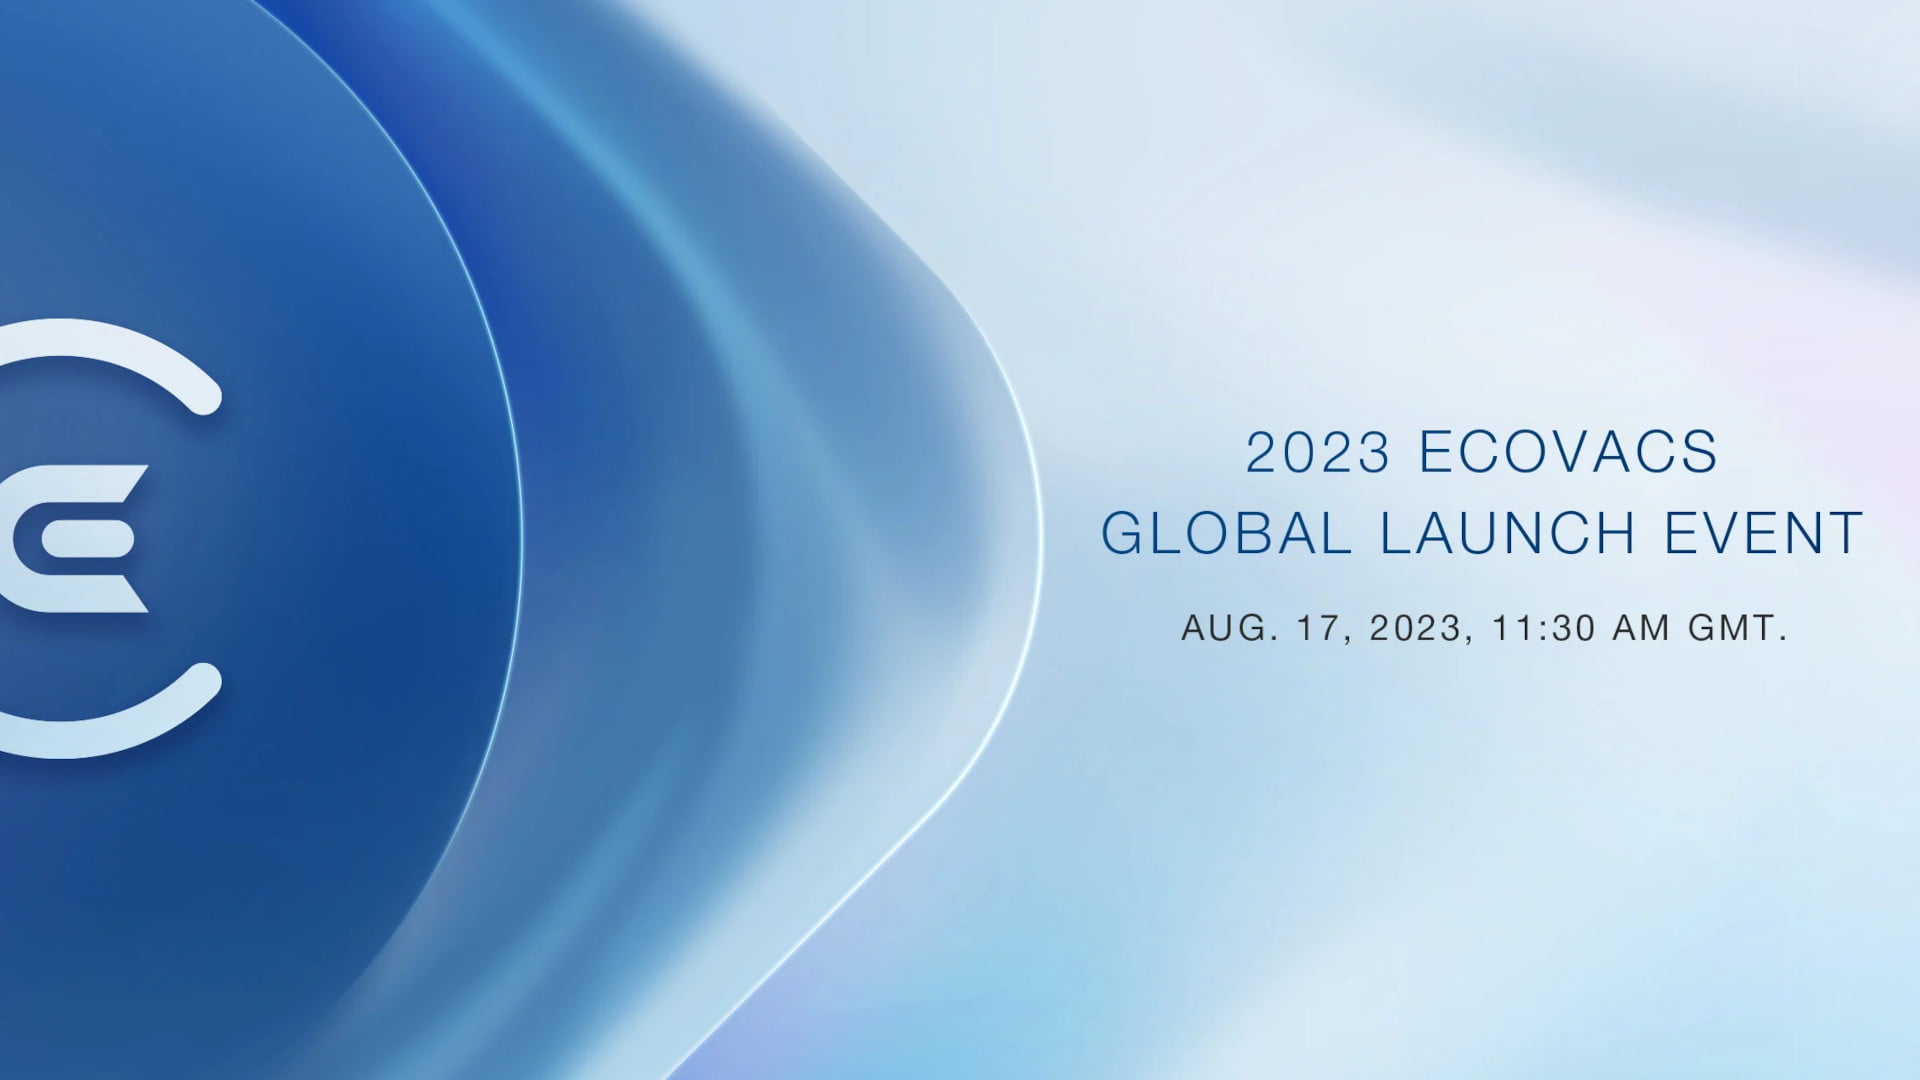 Événement de lancement mondial ECOVACS 2023